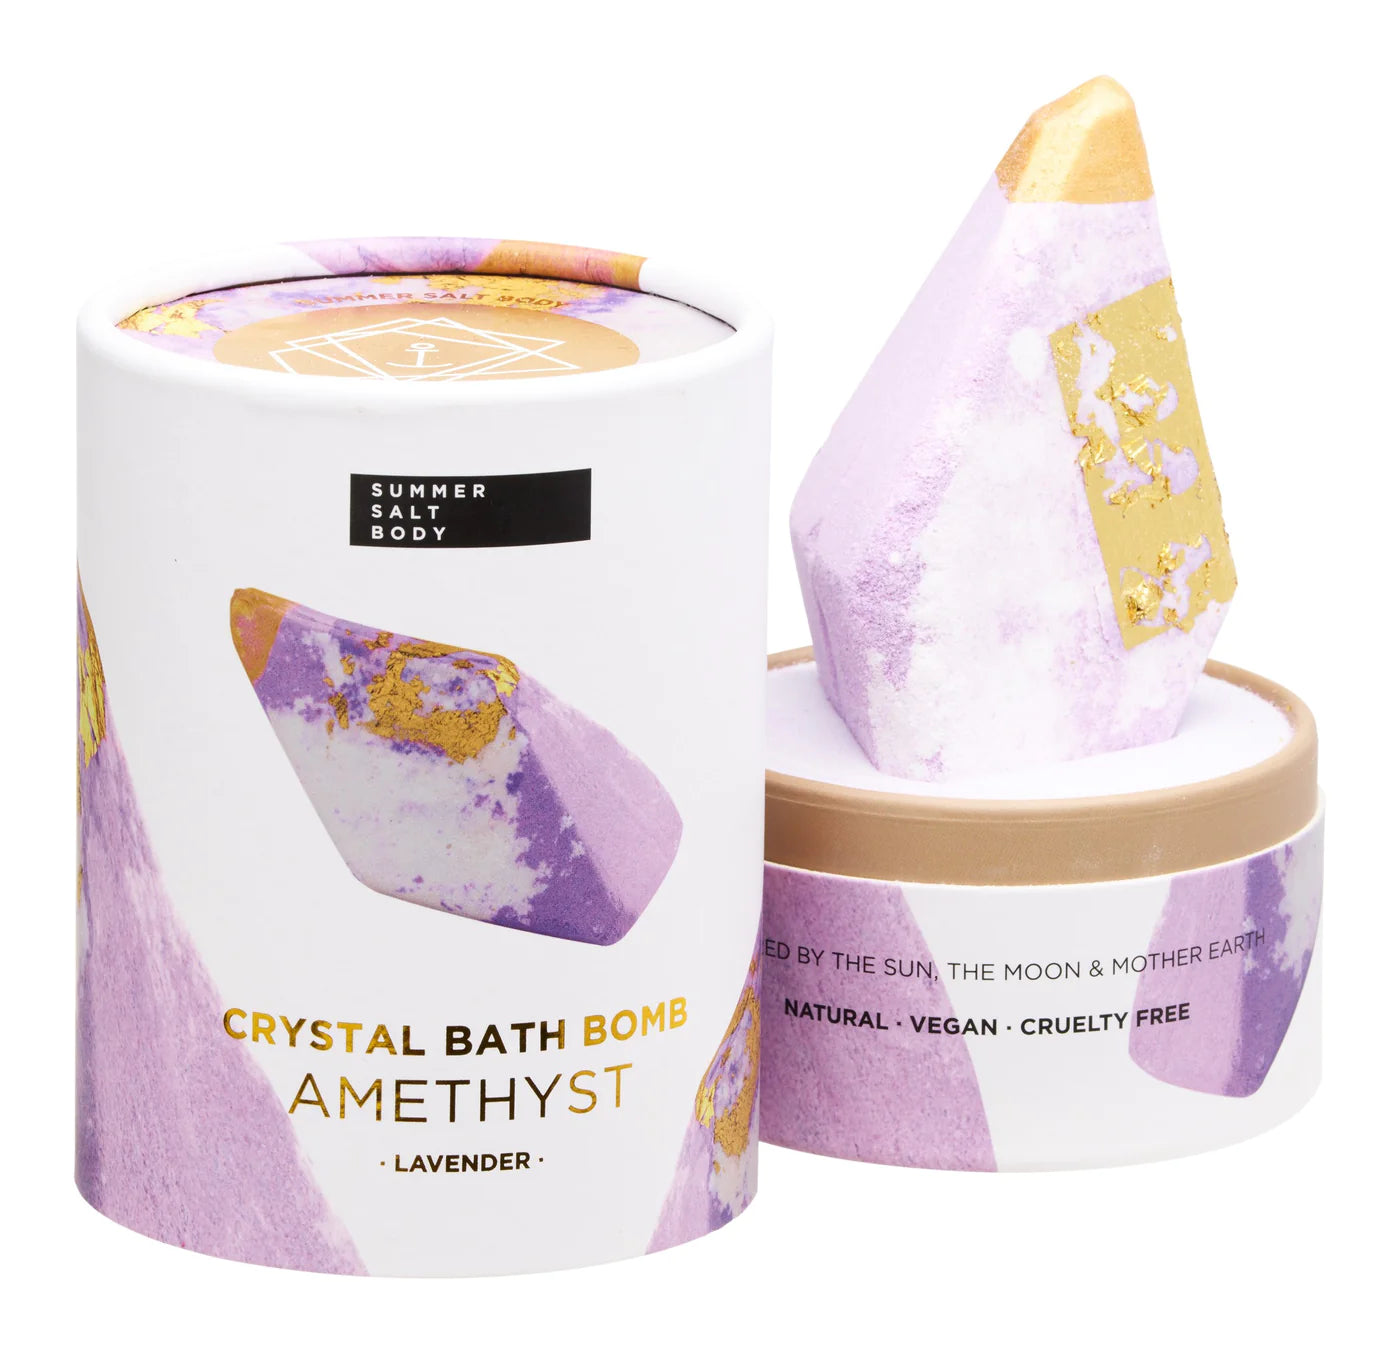 Summer Salt Body - Crystal Bath Bomb (Amethyst Lavender)